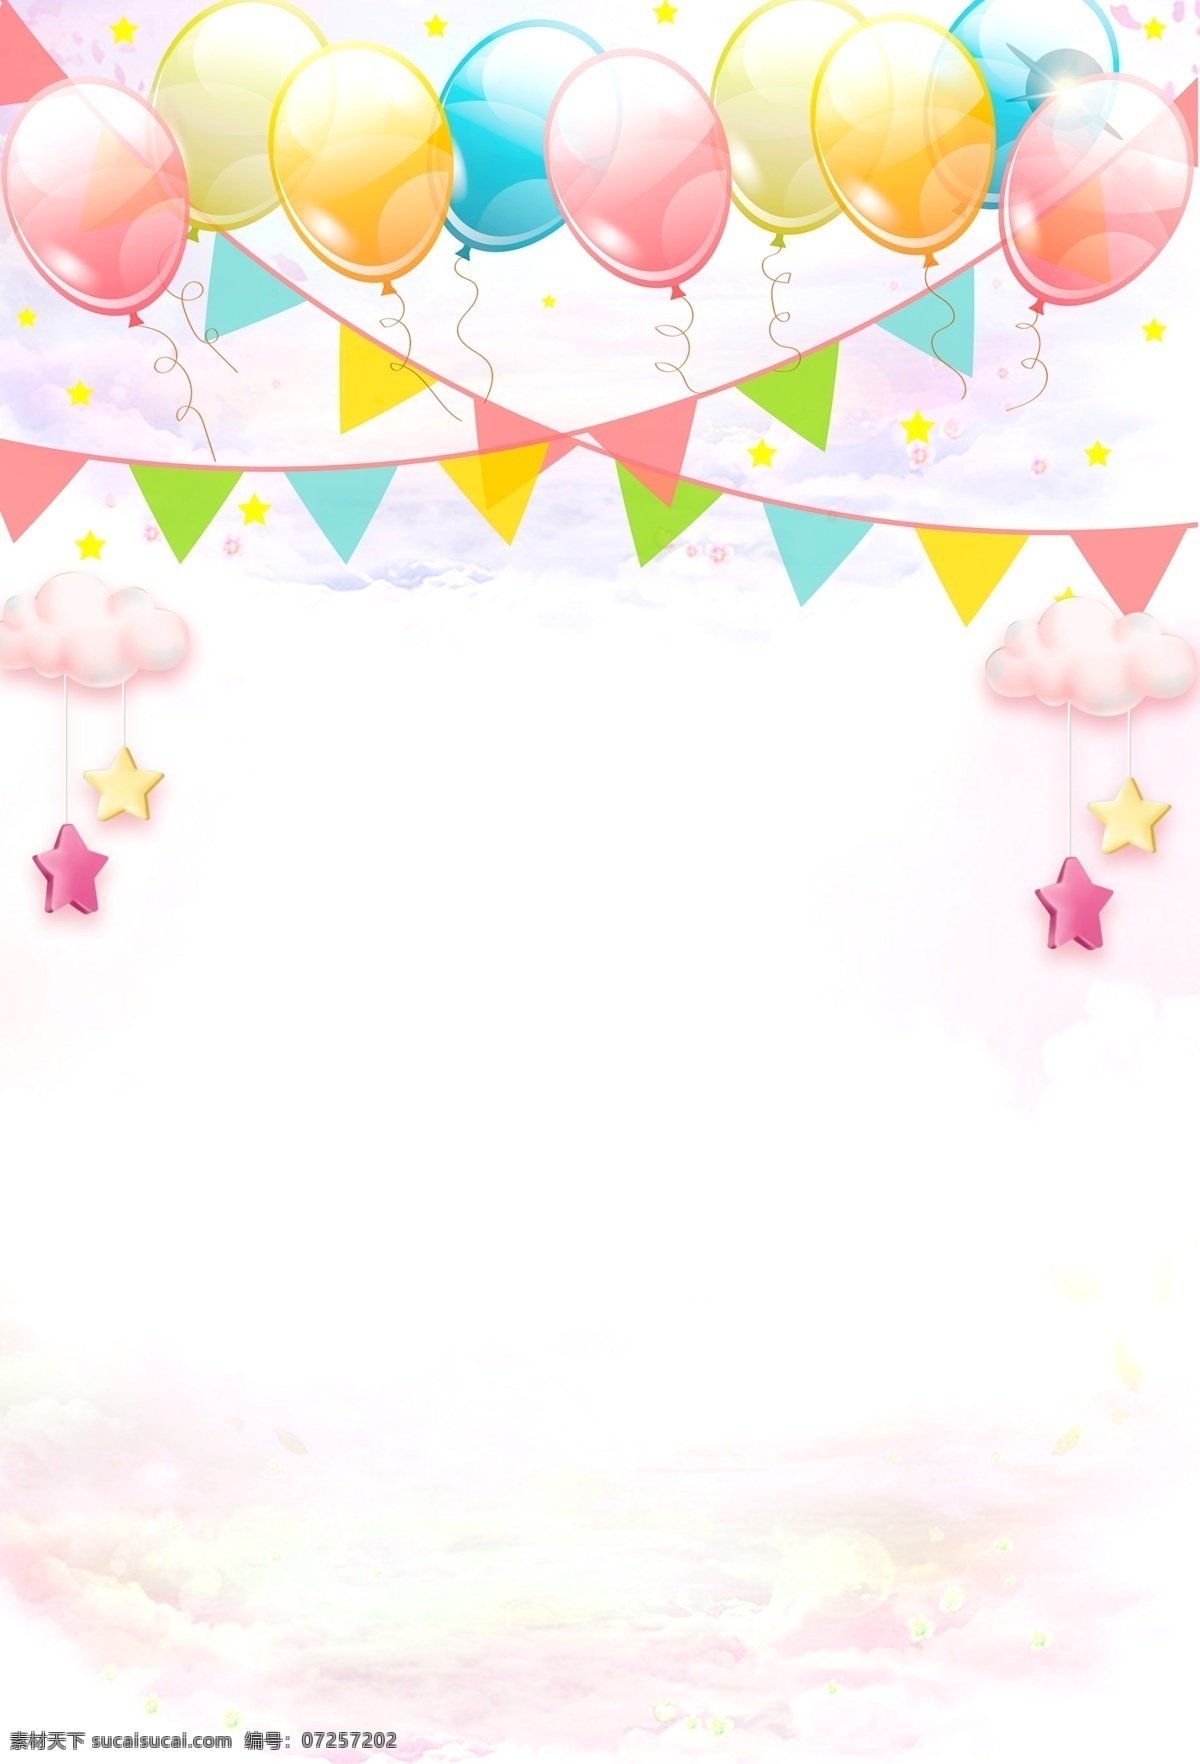 生日 快乐 粉色 蛋糕 浪漫 唯美 手机 配 图 背景 生日快 乐粉色蛋糕 小清新 手绘背景 水彩背景